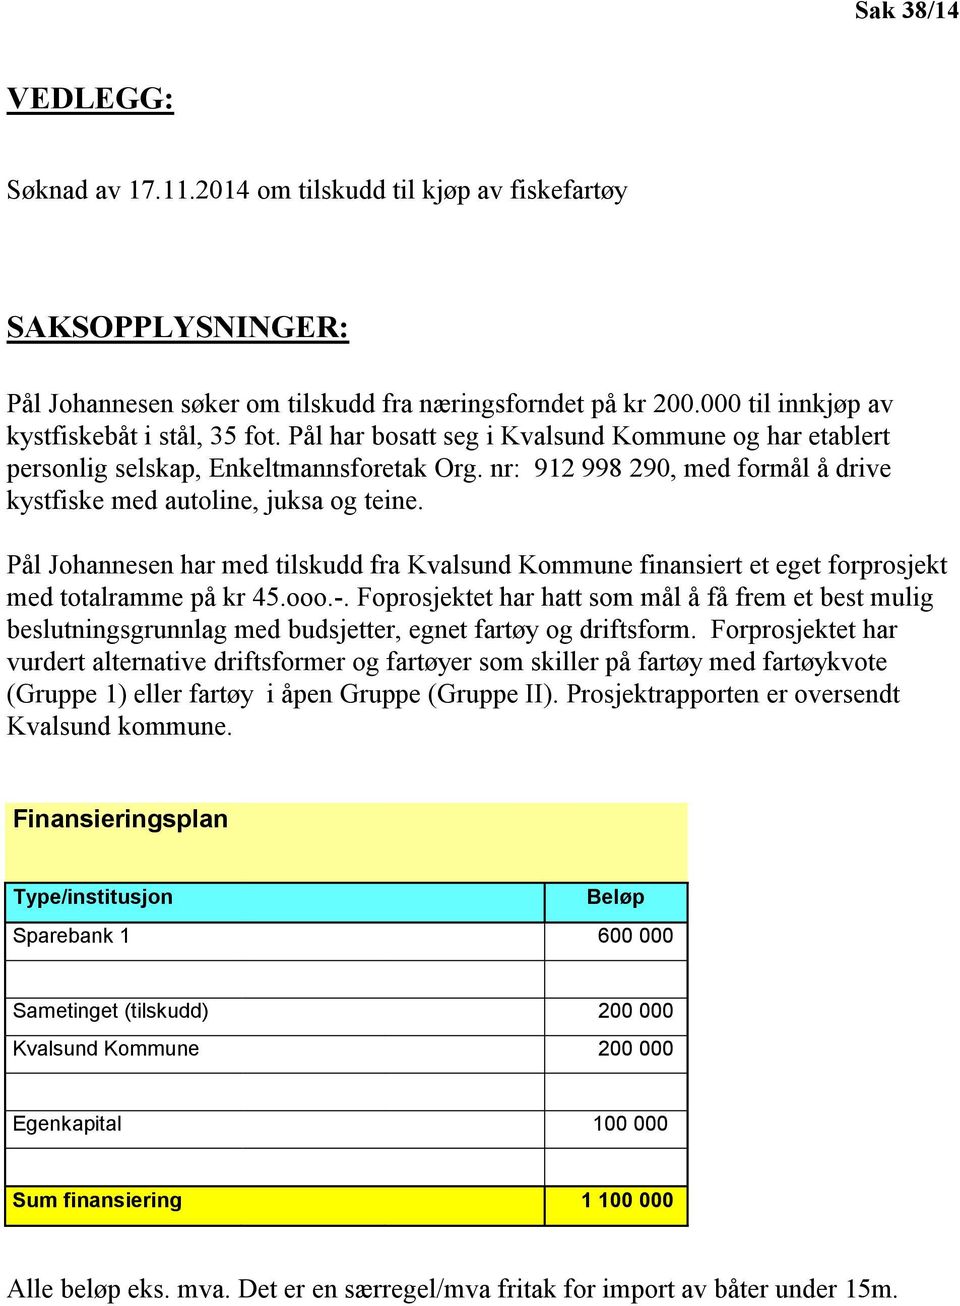 nr: 912 998 290, med formål å drive kystfiske med autoline, juksa og teine. Pål Johannesen har med tilskudd fra Kvalsund Kommune finansiert et eget forprosjekt med totalramme på kr 45.ooo.-.